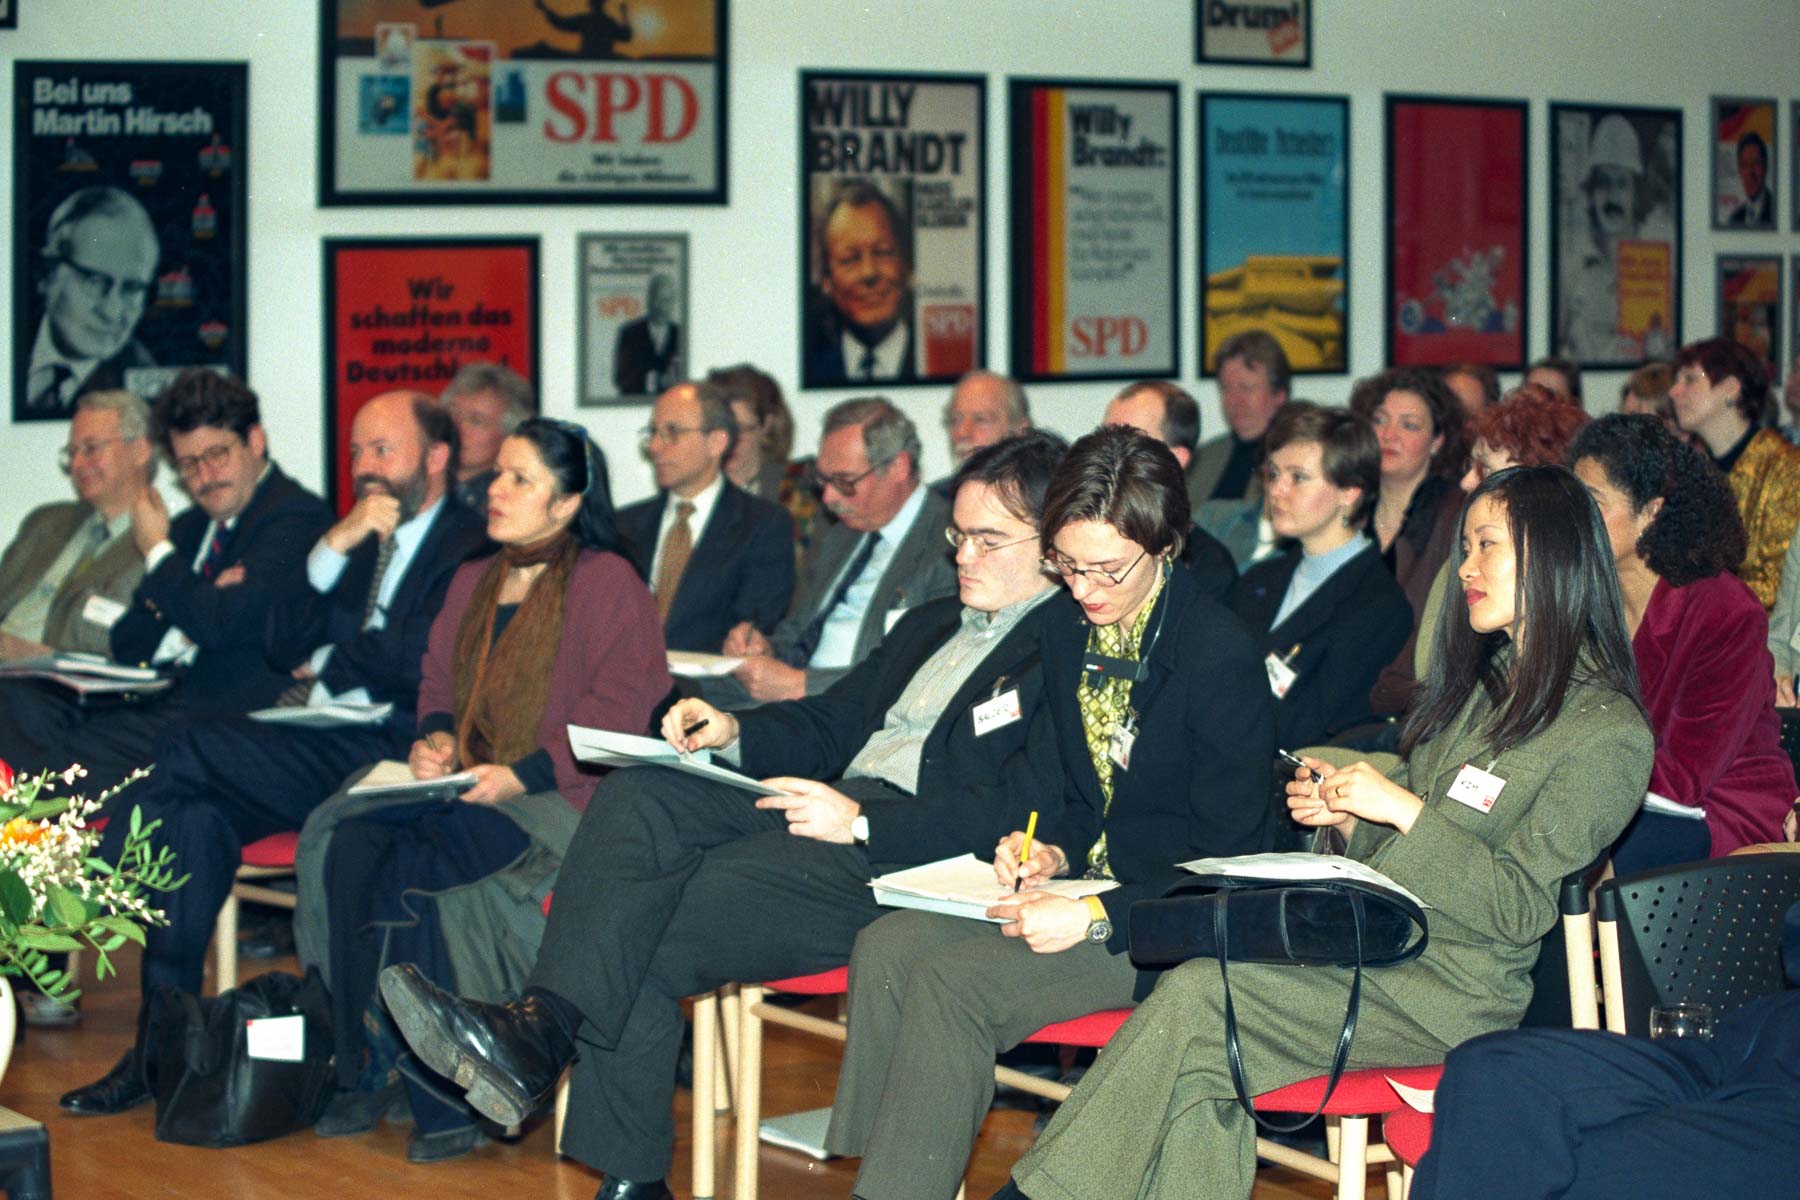 Teilnehmerinnen und Teilnehmer des Forums "Kultur" der SPD-Tagung.